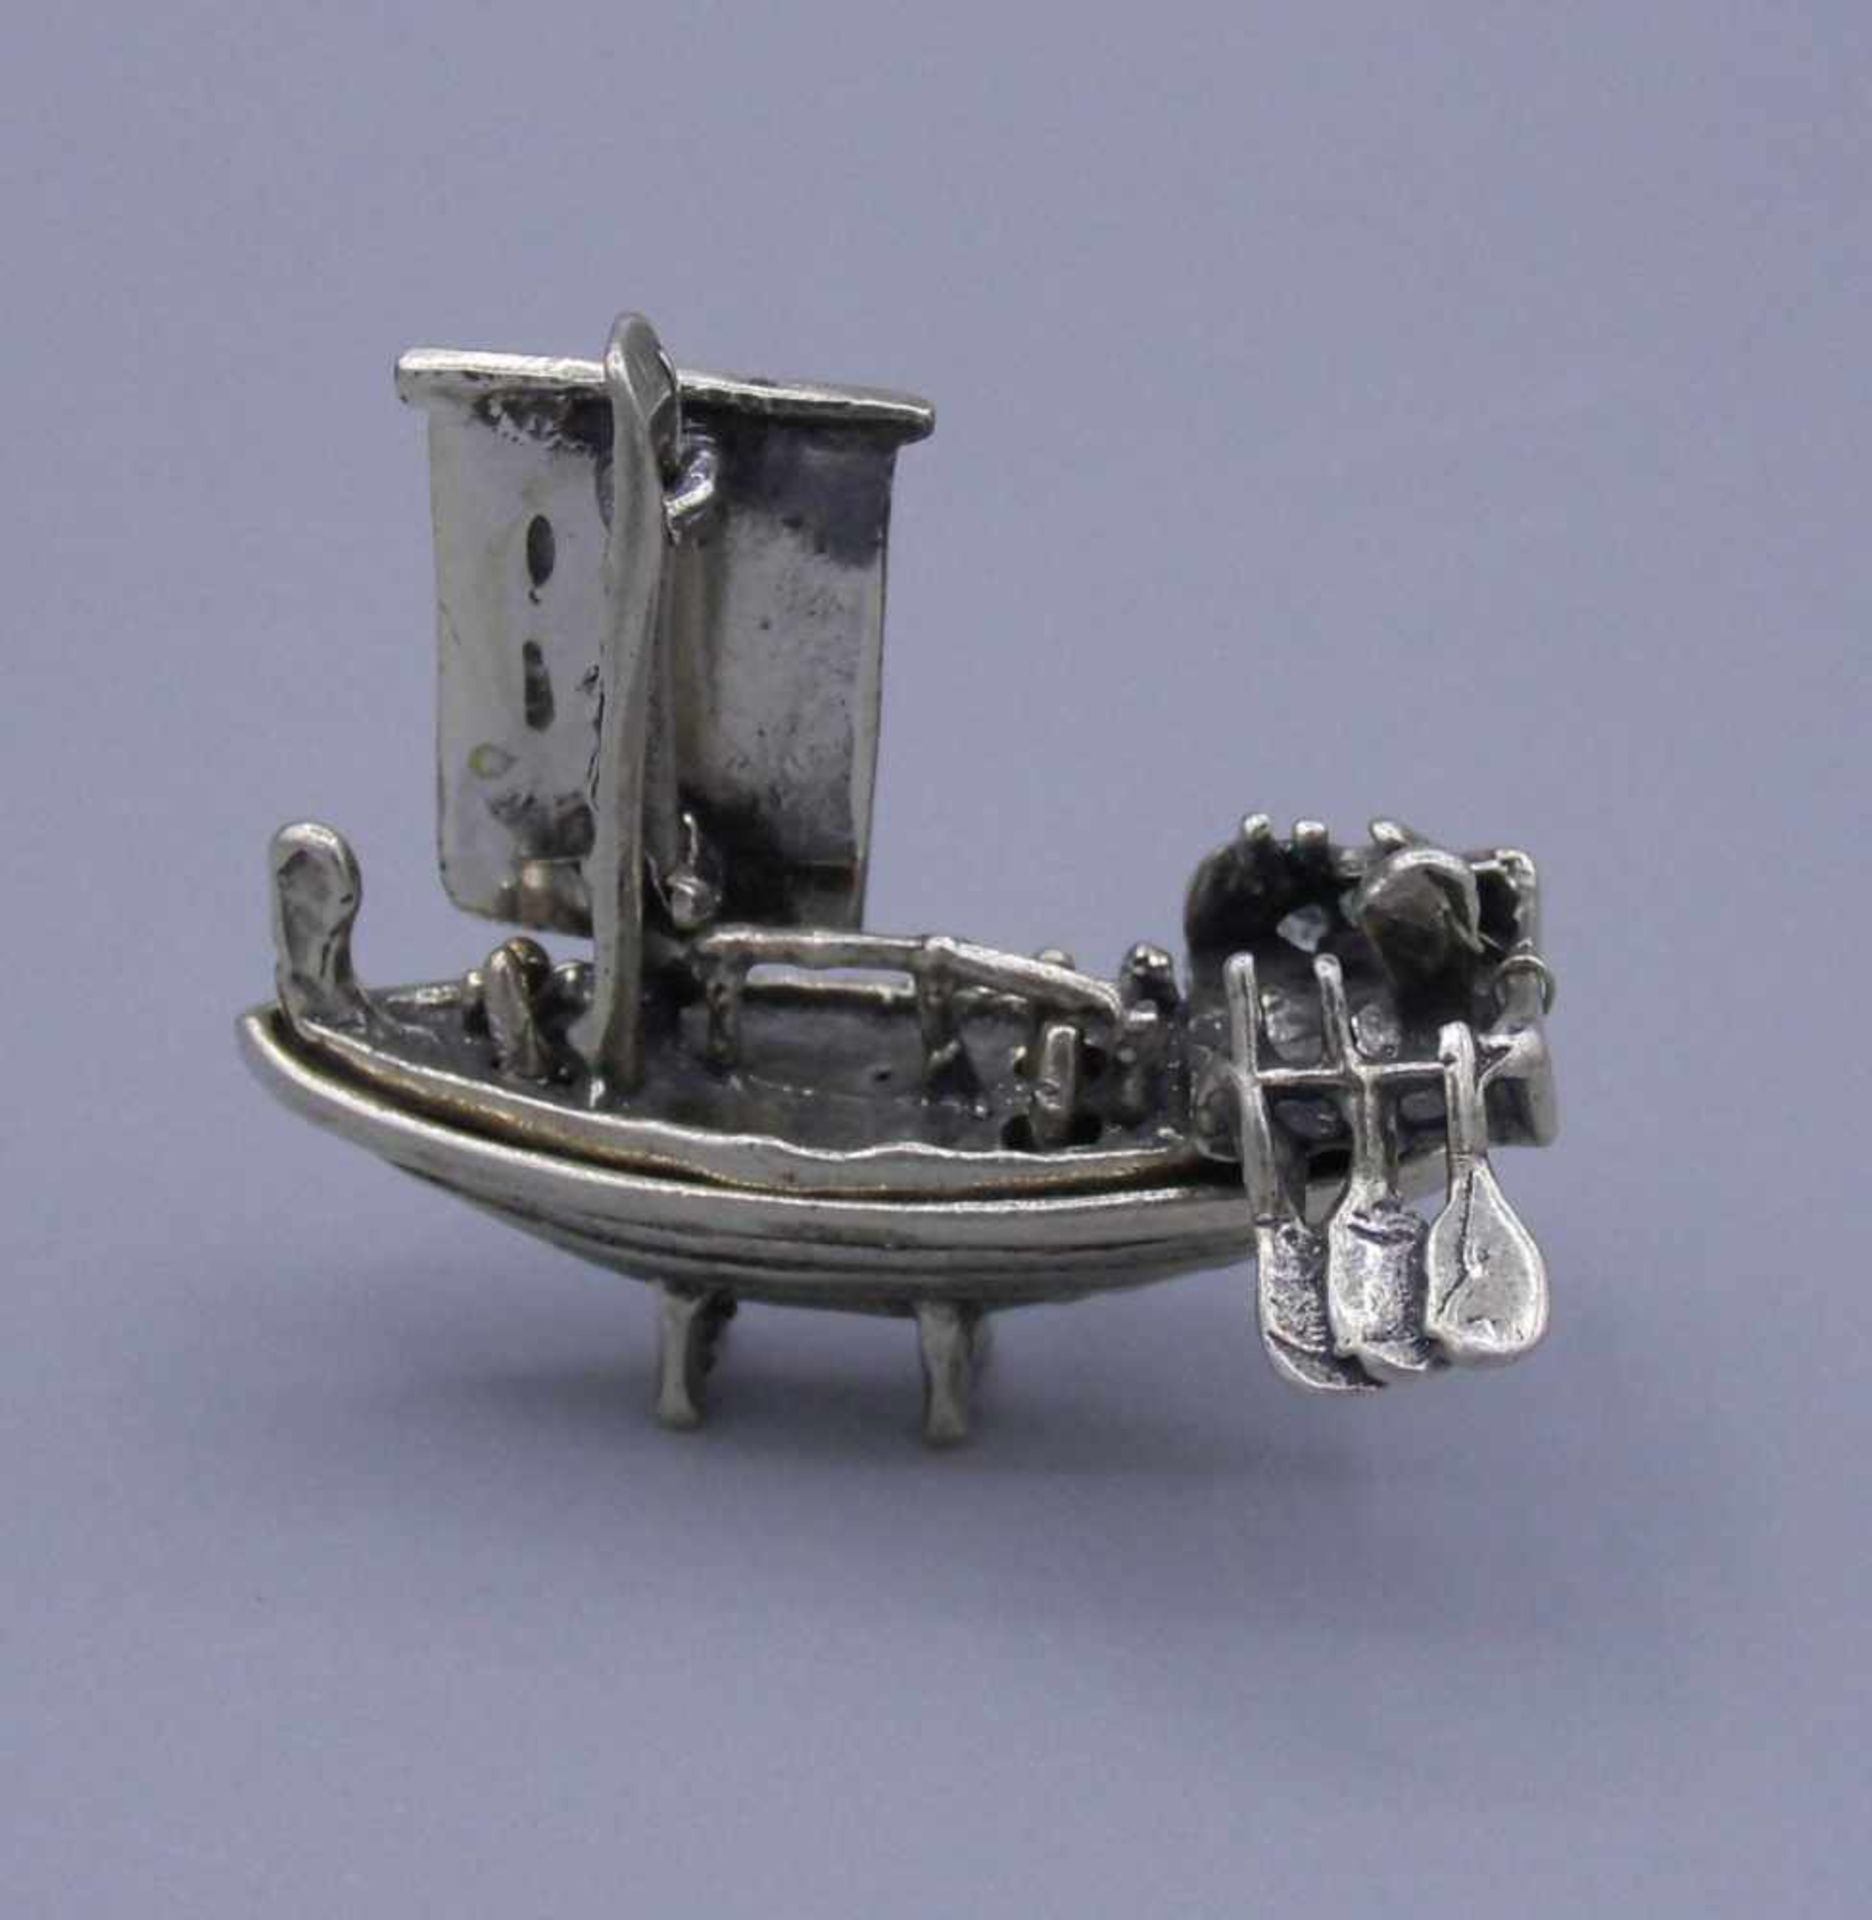 SILBERNE FIGUR: "Schiff / Segelschiff", 800er Silber (15 g), gepunzt mit Feingehaltsangabe. In